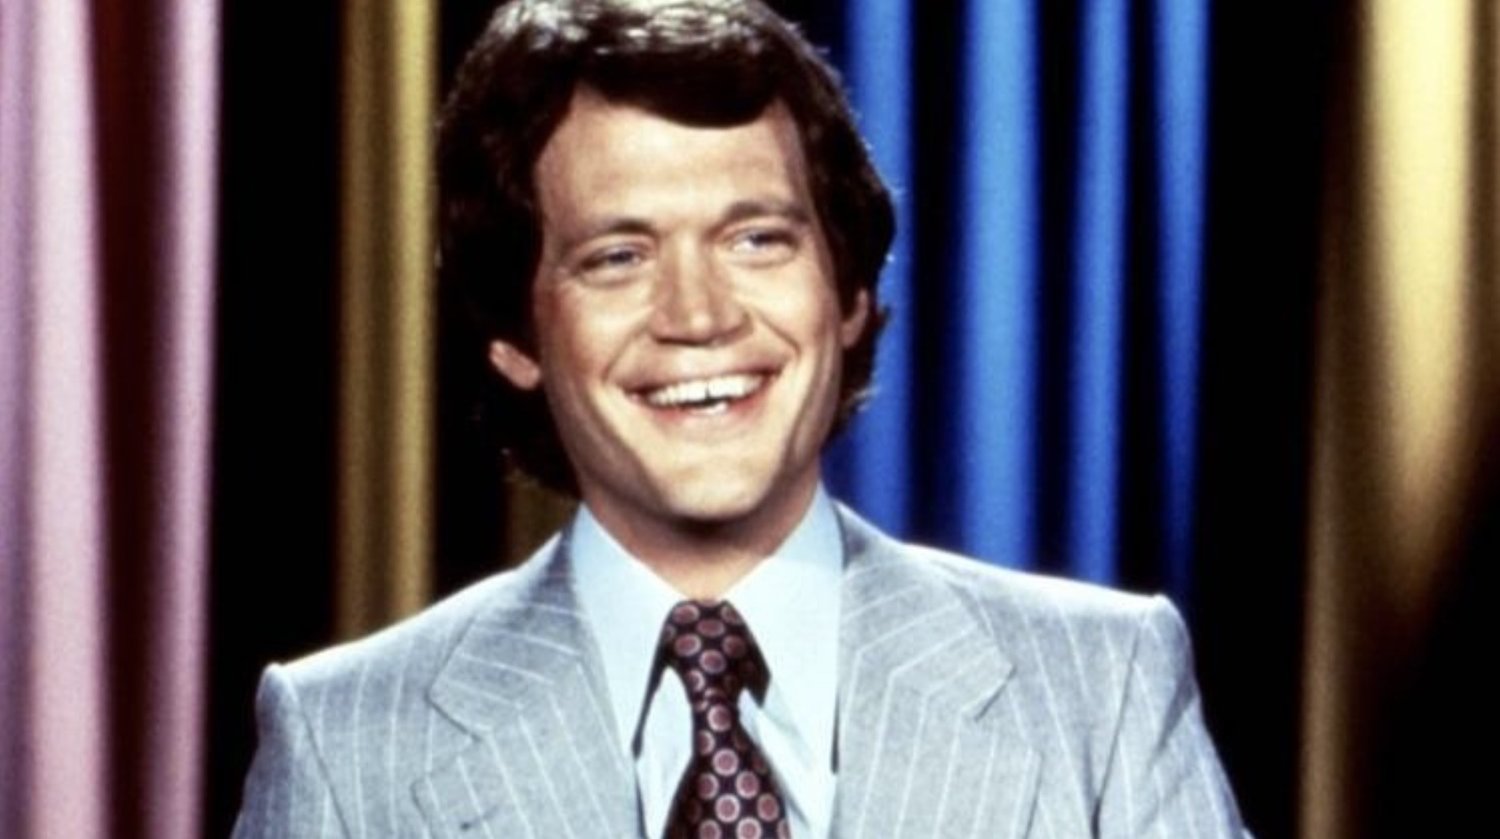 David Letterman dit son AVION !  L’audition a été horrible, mais il est parti en riant et en s’étant lié d’amitié avec l’équipe